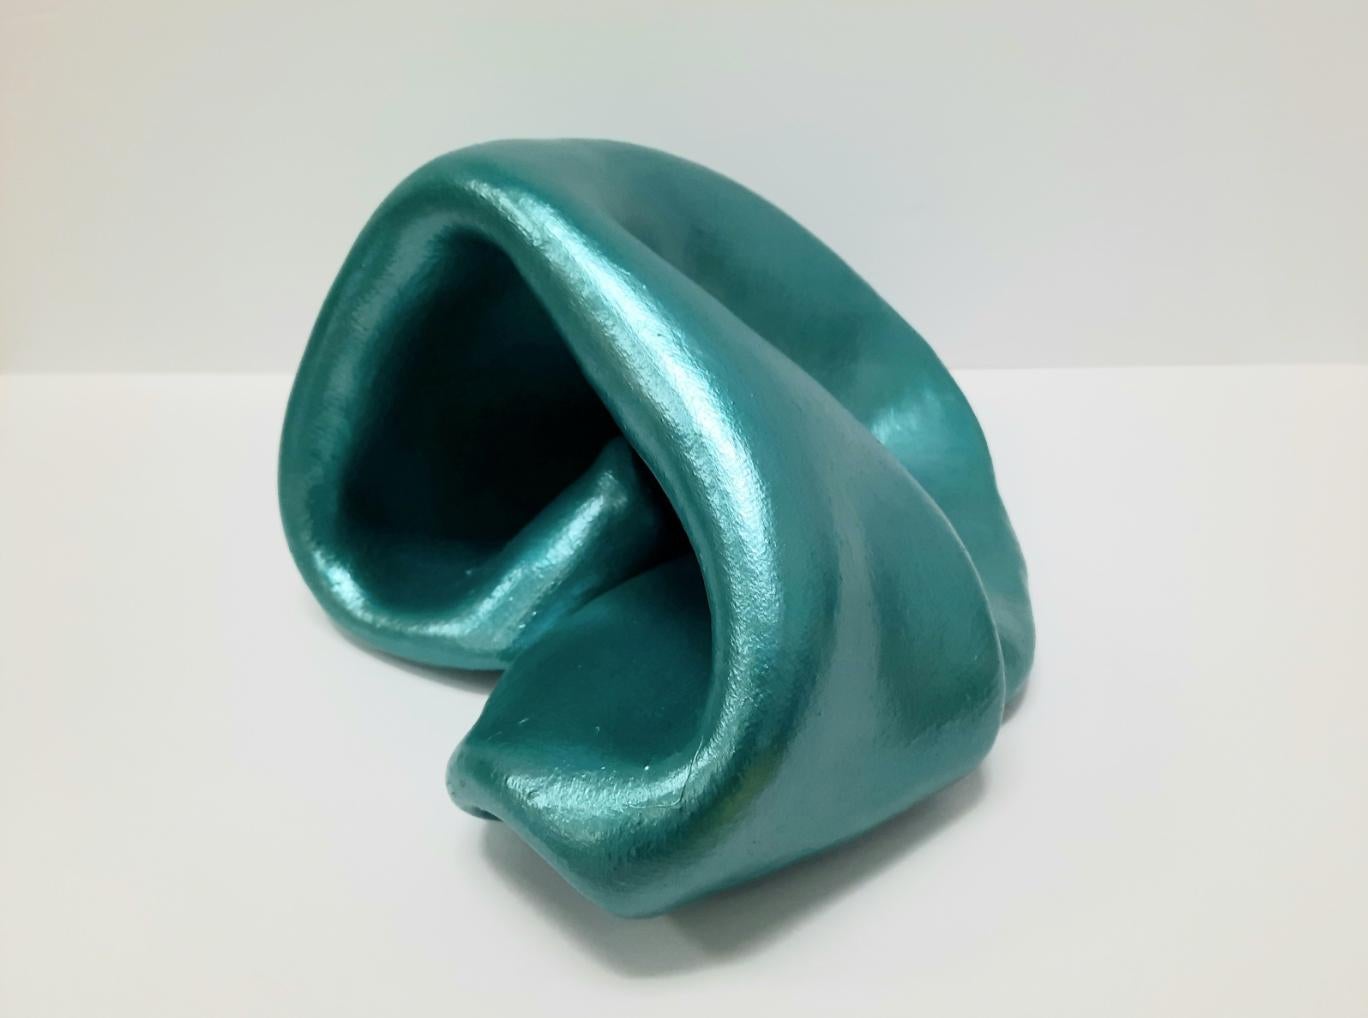 Sinosity petite in Aqua (pop art teal metallic smooth slick sculpture abstract)